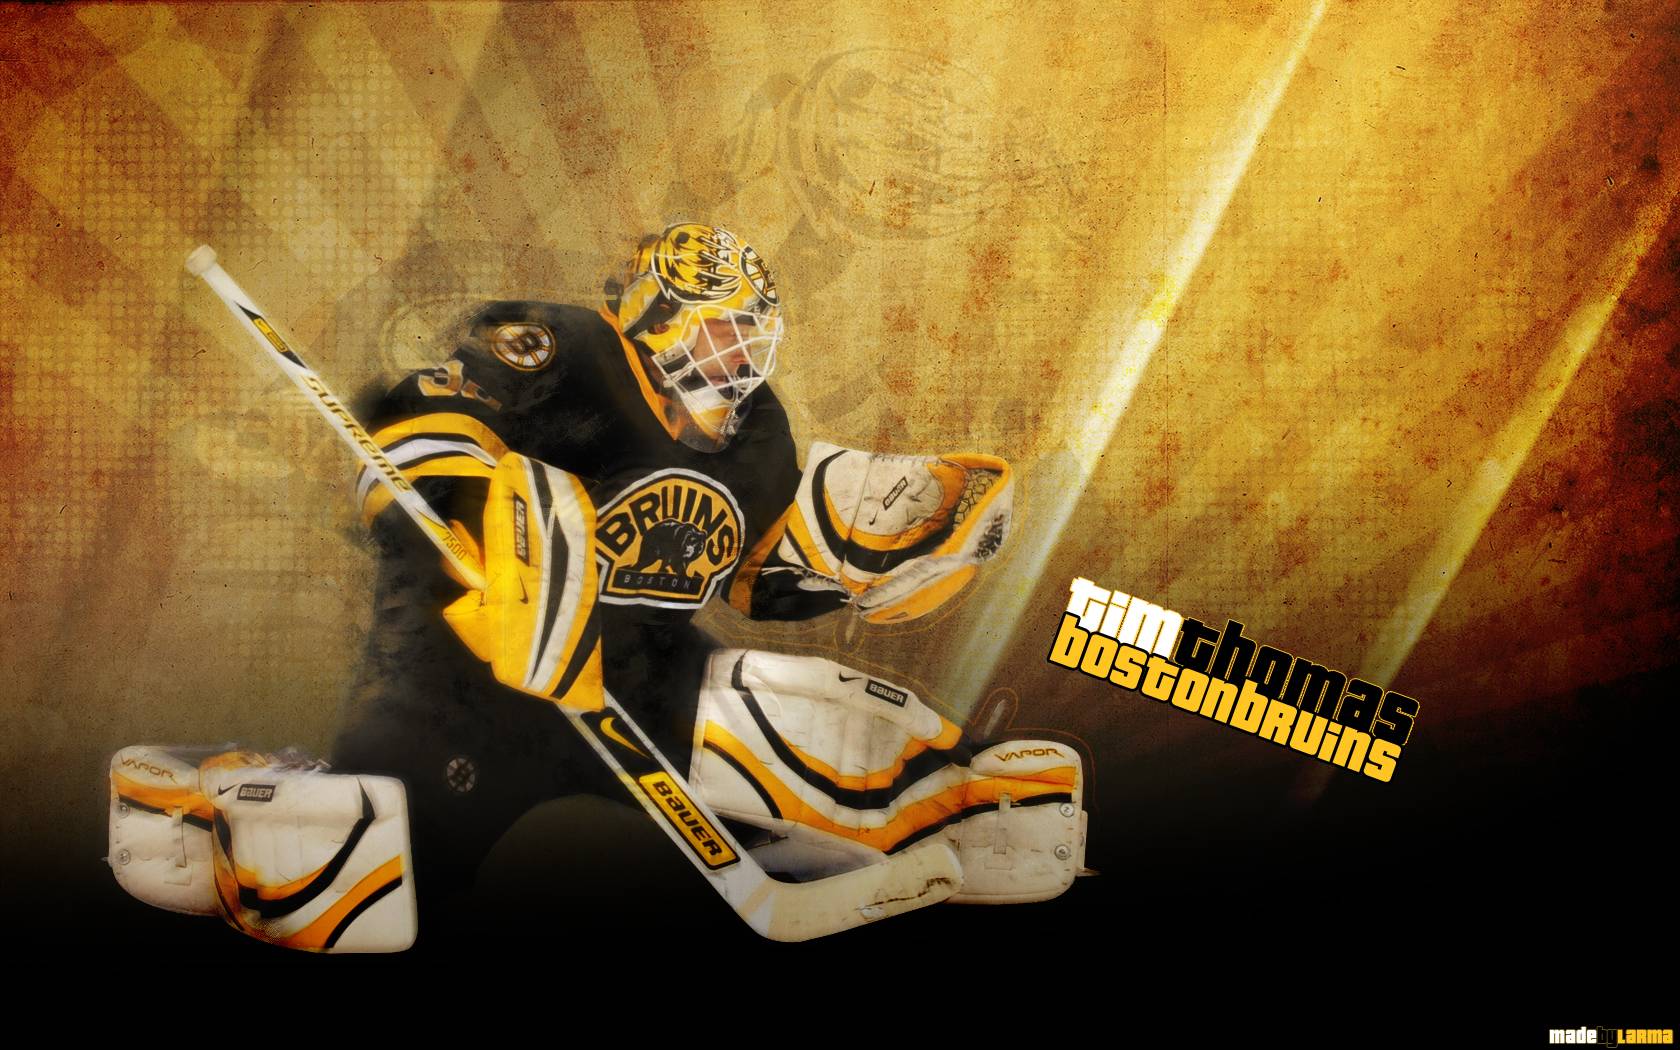 Boston Bruins wallpaper. Boston Bruins wallpaper